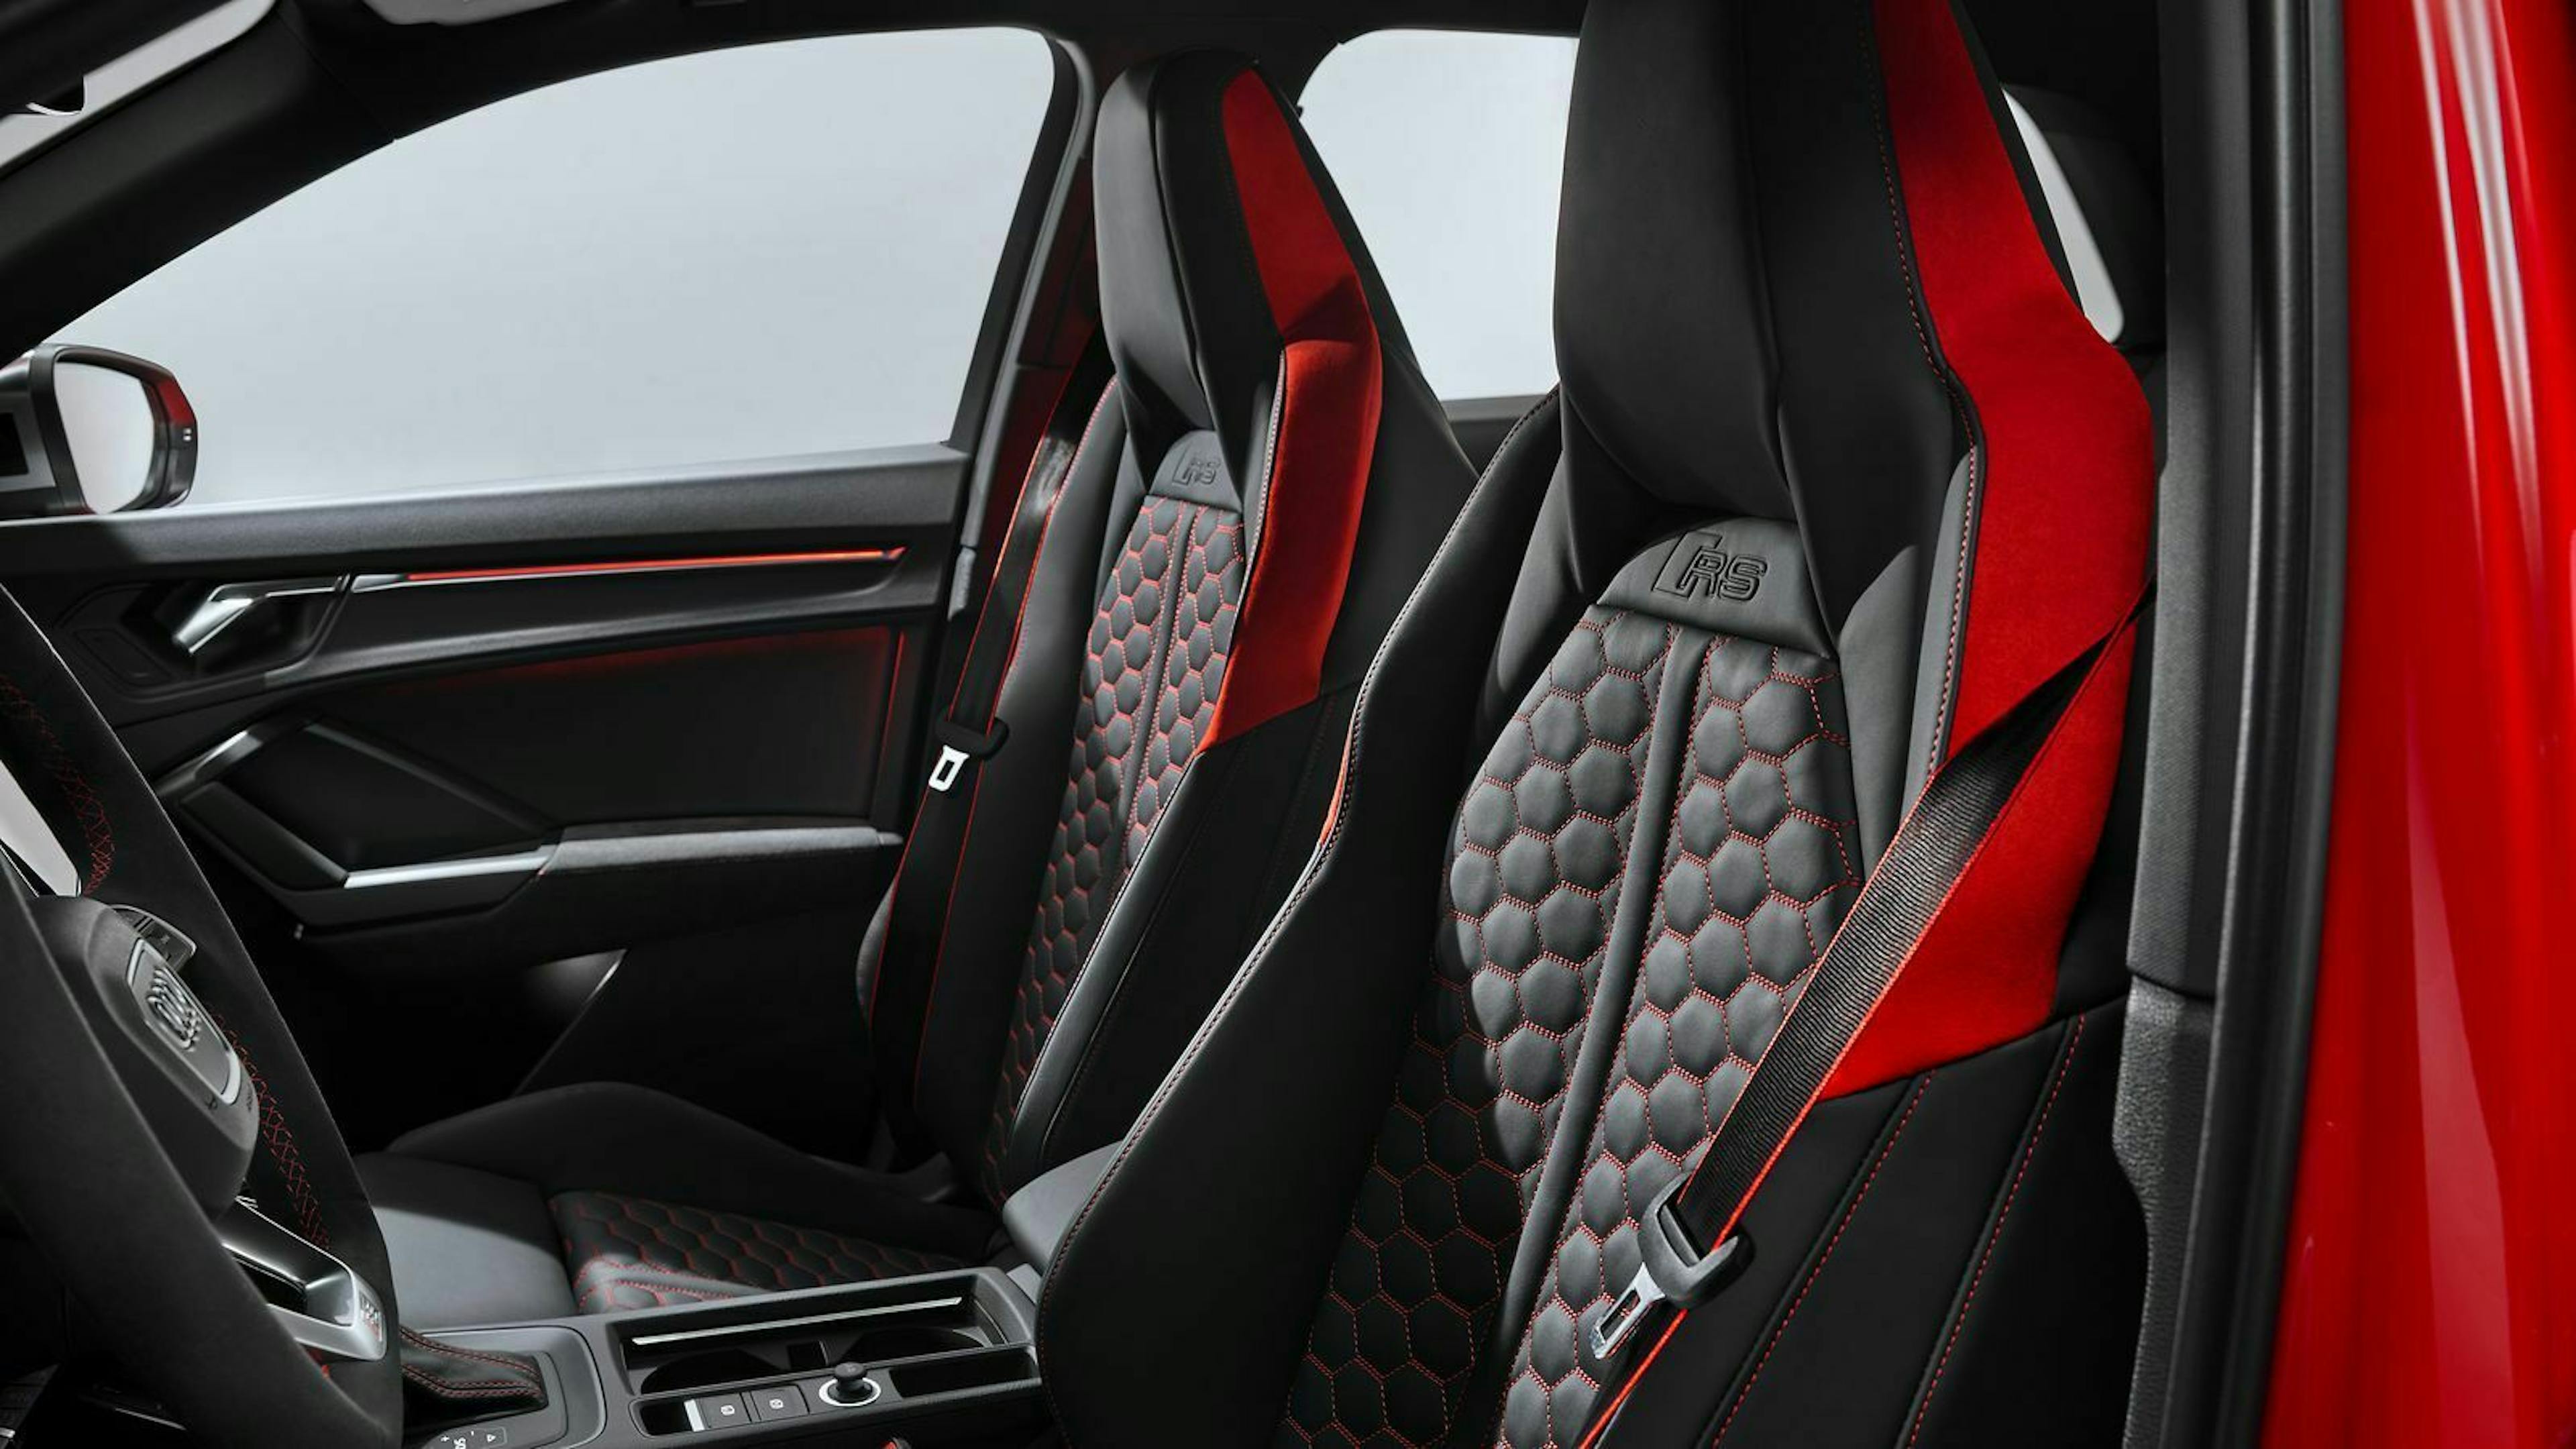 Designpakete setzen im Innenraum des Audi RS Q3 farbliche Akzente an Gurten, Fußmatten und Lenkrad